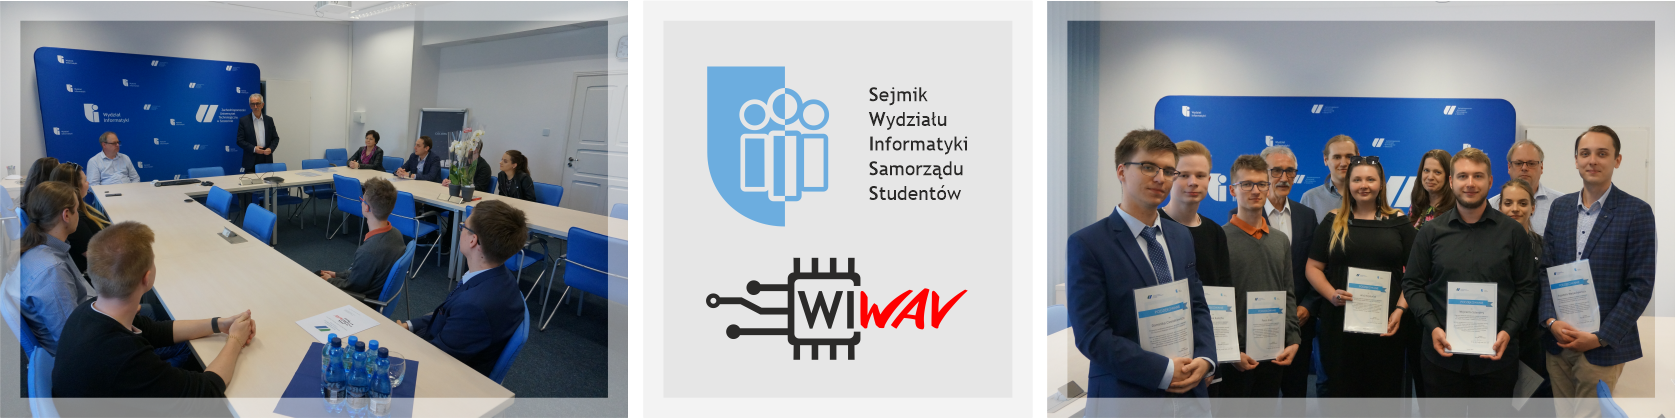 Podziękowania dla Samorządu Studentów Wydziału Informatyki i SKN WIWAV